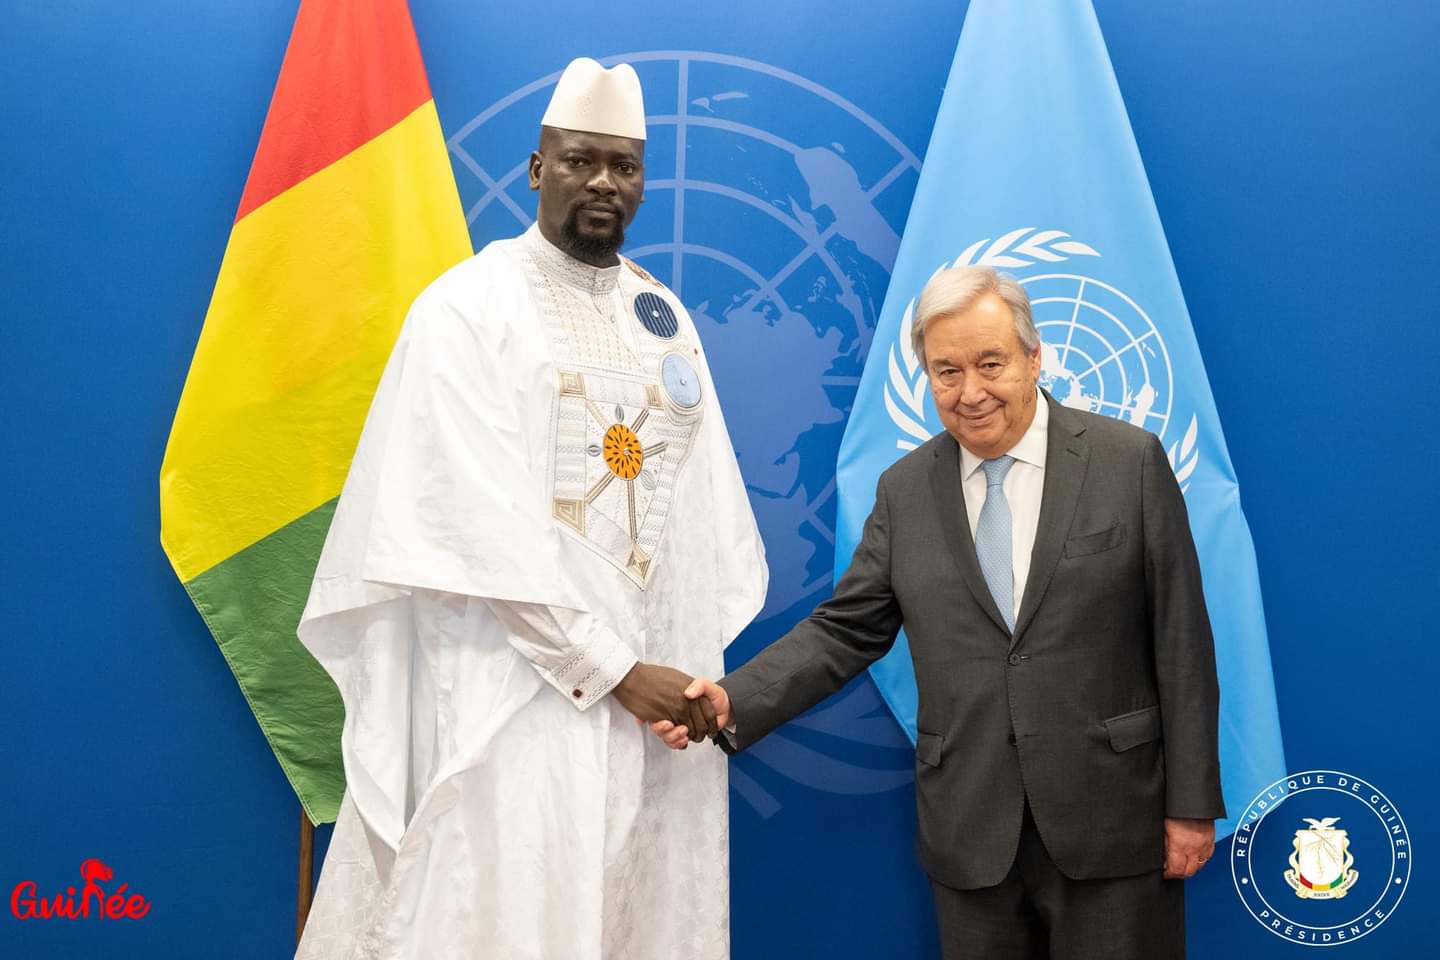 𝗦𝗶𝗲̀𝗴𝗲 𝗱𝗲s Nations-Unies: le Col. Mamadi Doumbouya a été 𝗿𝗲𝗰̧𝘂 𝗽𝗮𝗿 𝗔𝗻𝘁𝗼́𝗻𝗶𝗼 𝗚𝘂𝘁𝗲𝗿𝗿𝗲𝘀, Secrétaire Général de l'Organisation - Infosreelles.com